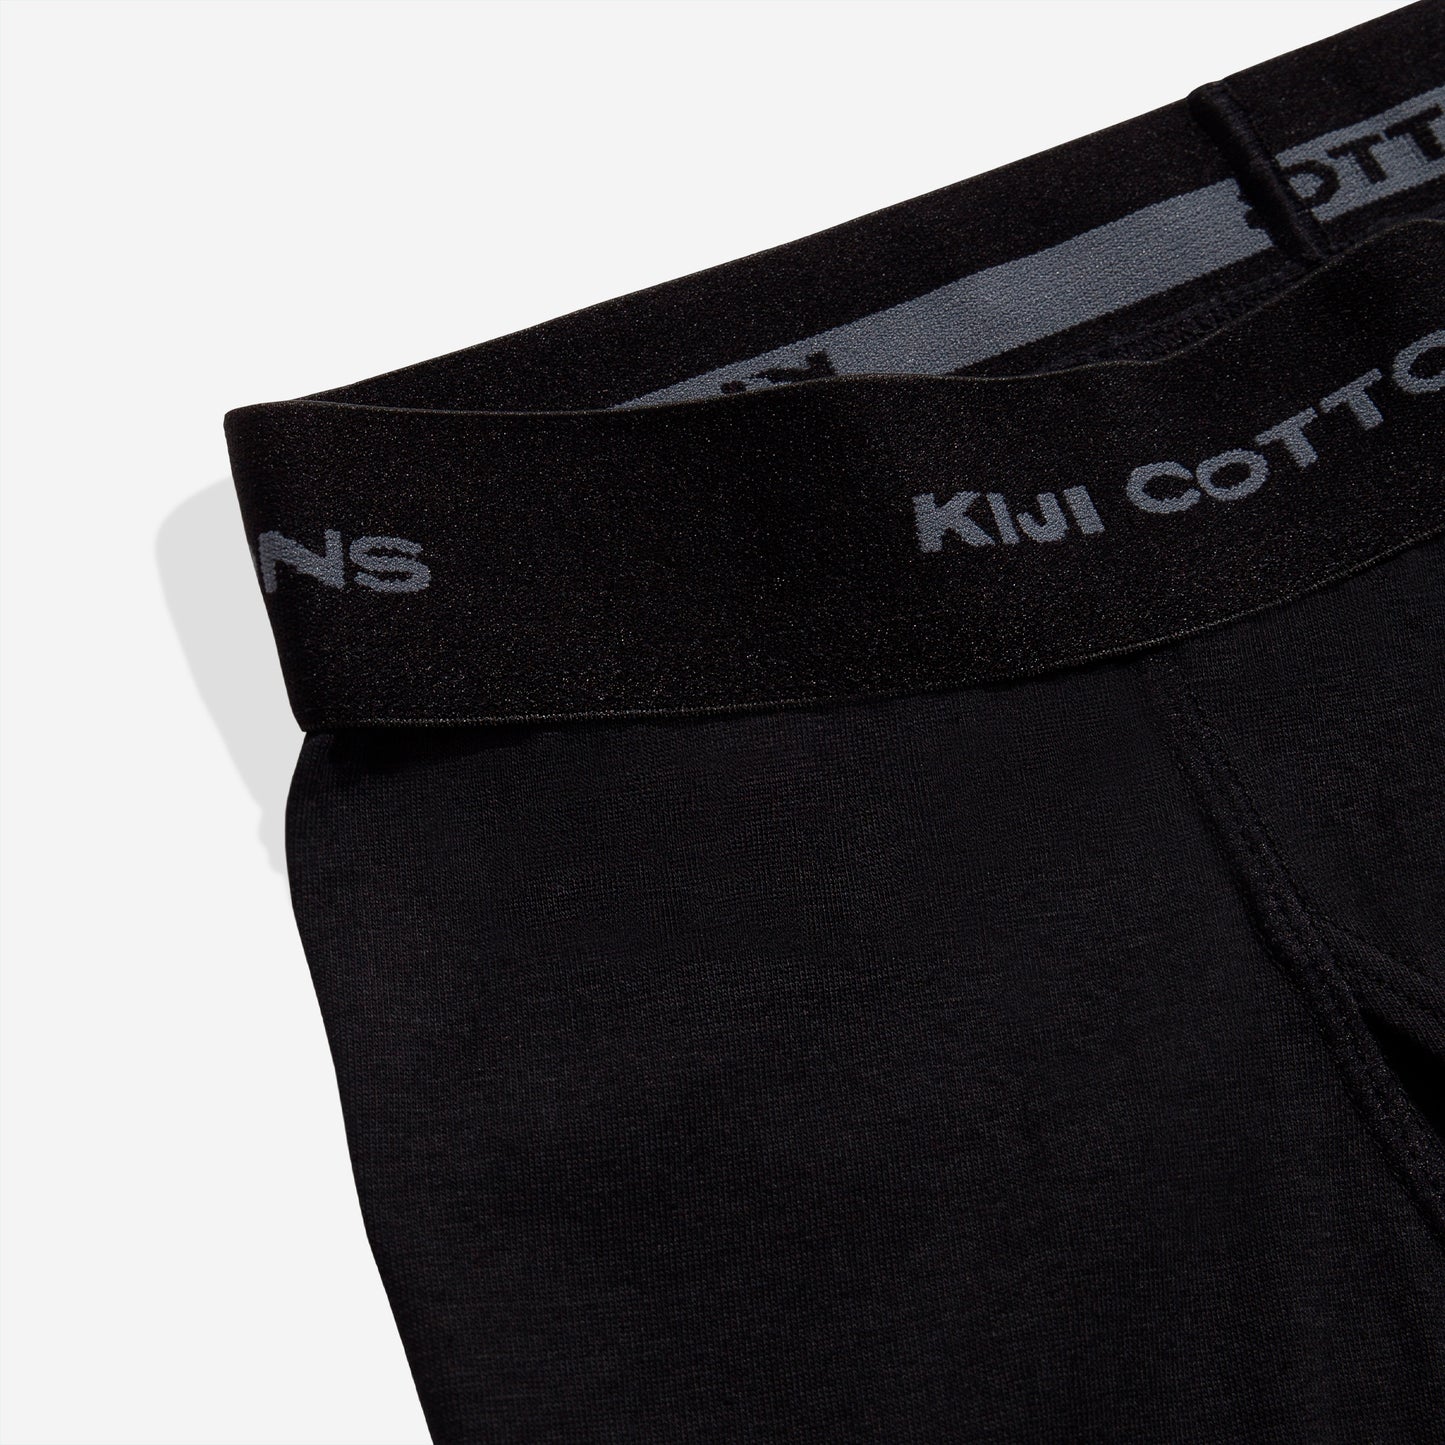 Foto de detalhe com zoom no elástico da cueca kiji boxer preta, onde está escrito kiji cottons.